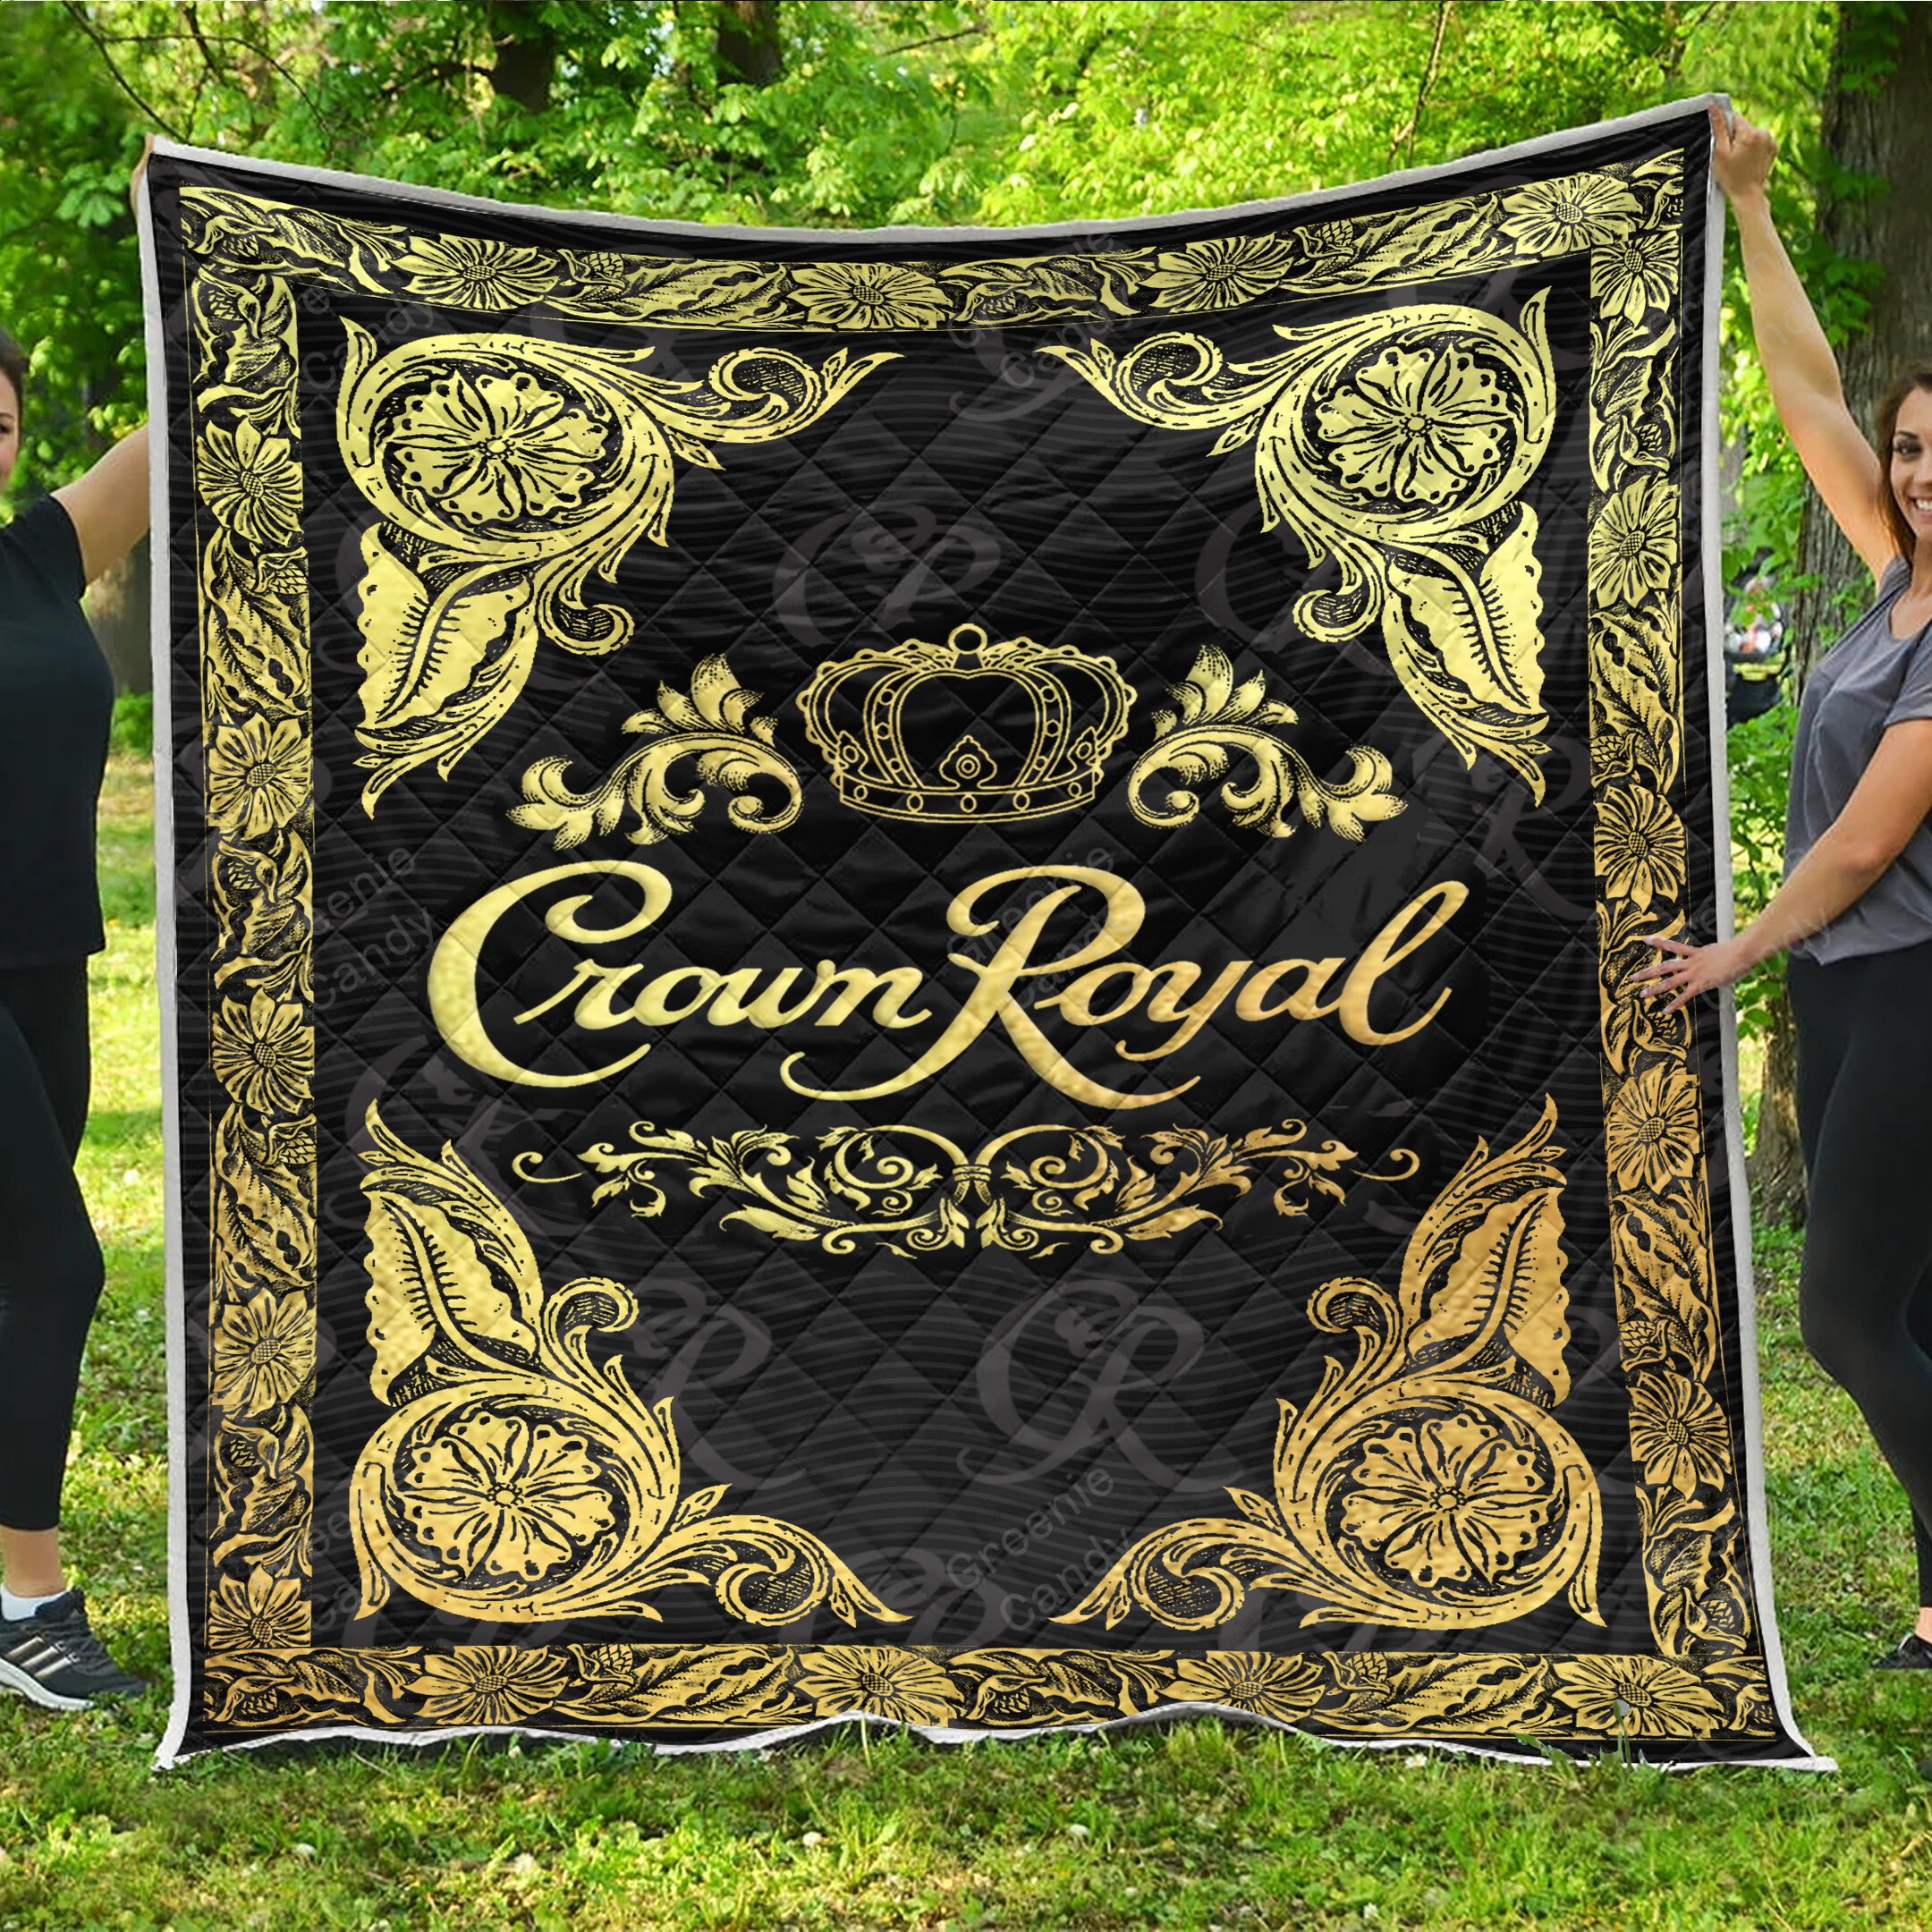 Crown Royal Whisky black blanket quilt